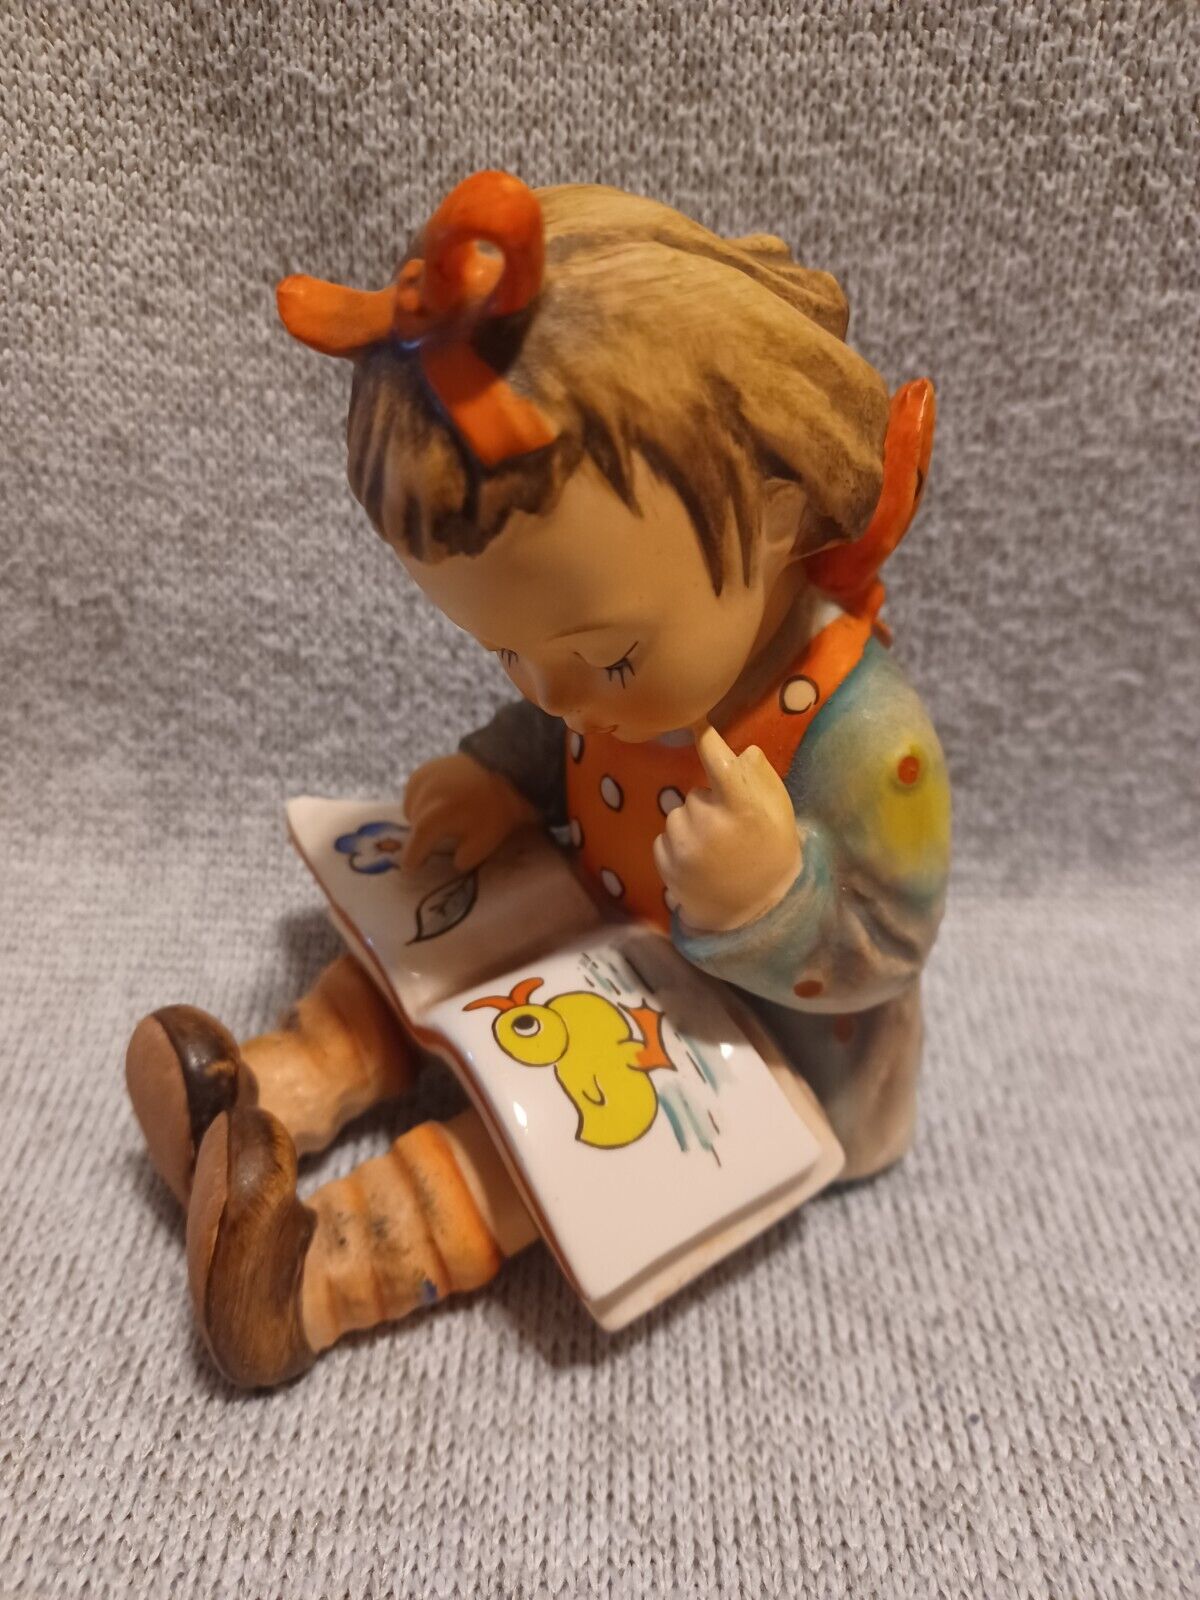 Vintage Hummel # 8 “Bookworm” Girl Reading Figurine, Germany 